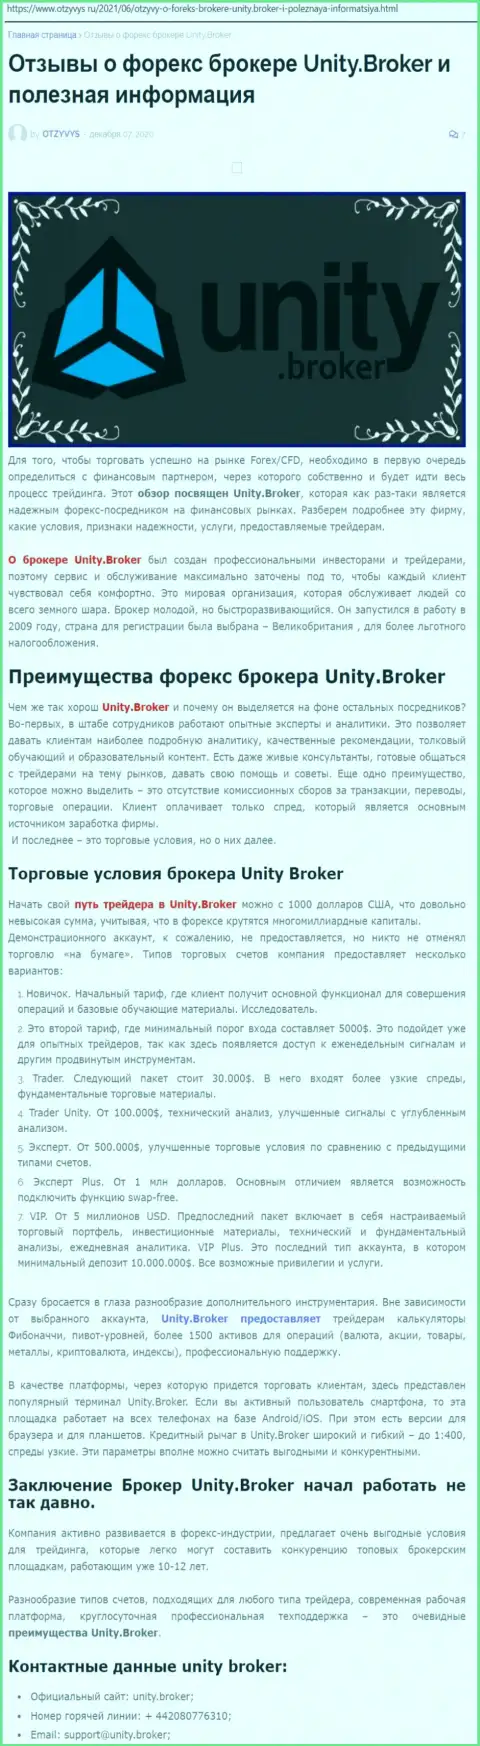 Публикация о FOREX-дилинговой компании Юнити Брокер на онлайн-сервисе Отзывус Ру